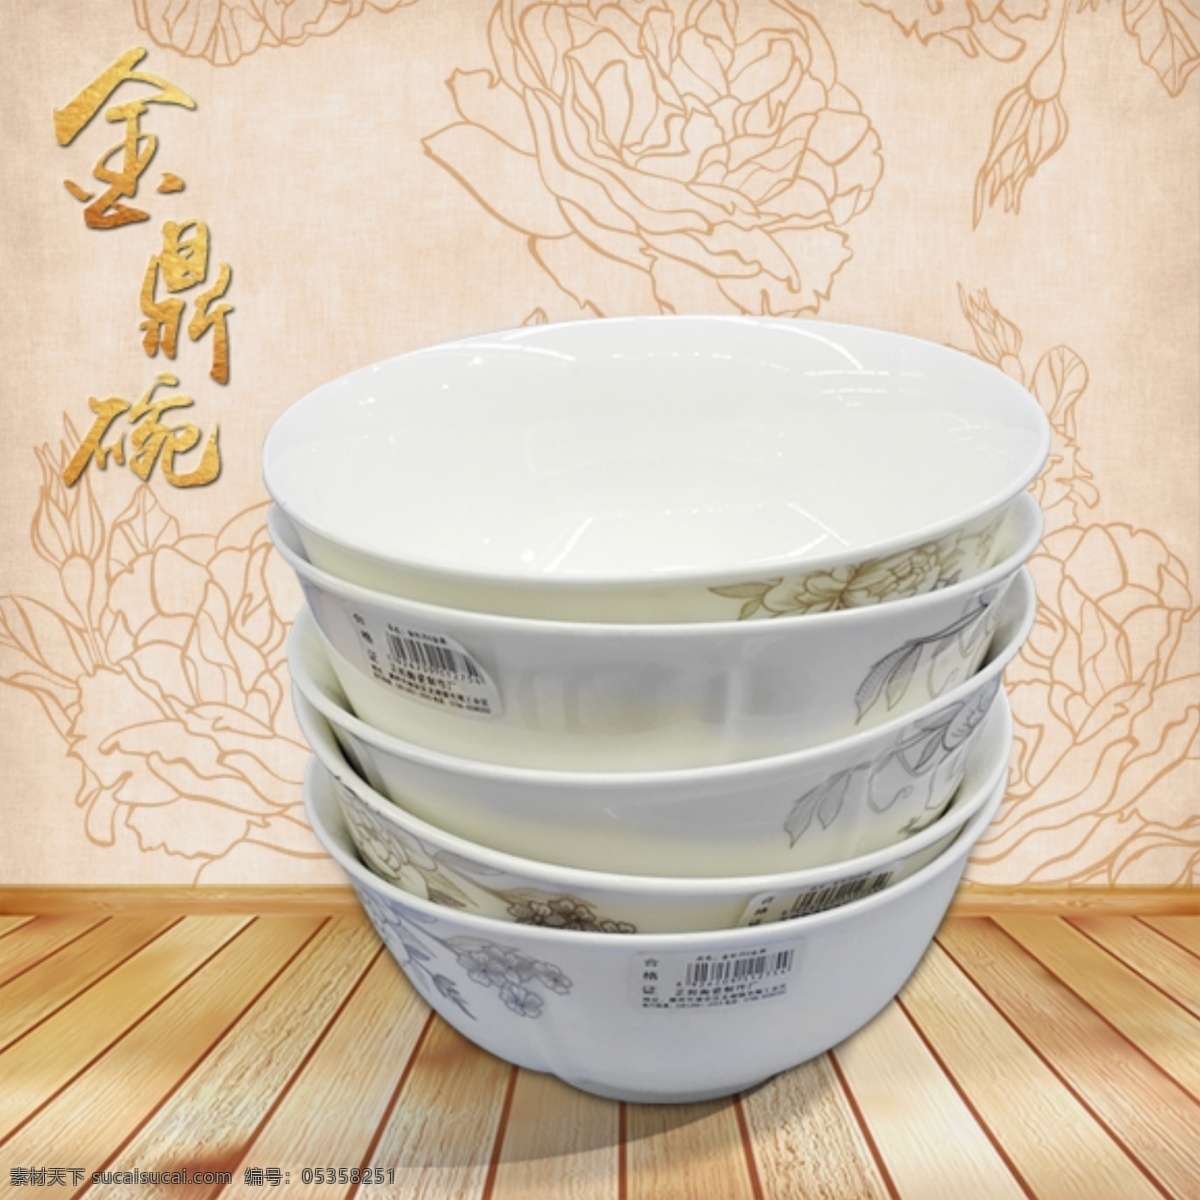 金鼎 白 瓷碗 古风 主题 促销 金鼎碗 白瓷 陶瓷 古色古香 餐具 中国风 促销海报 招贴设计